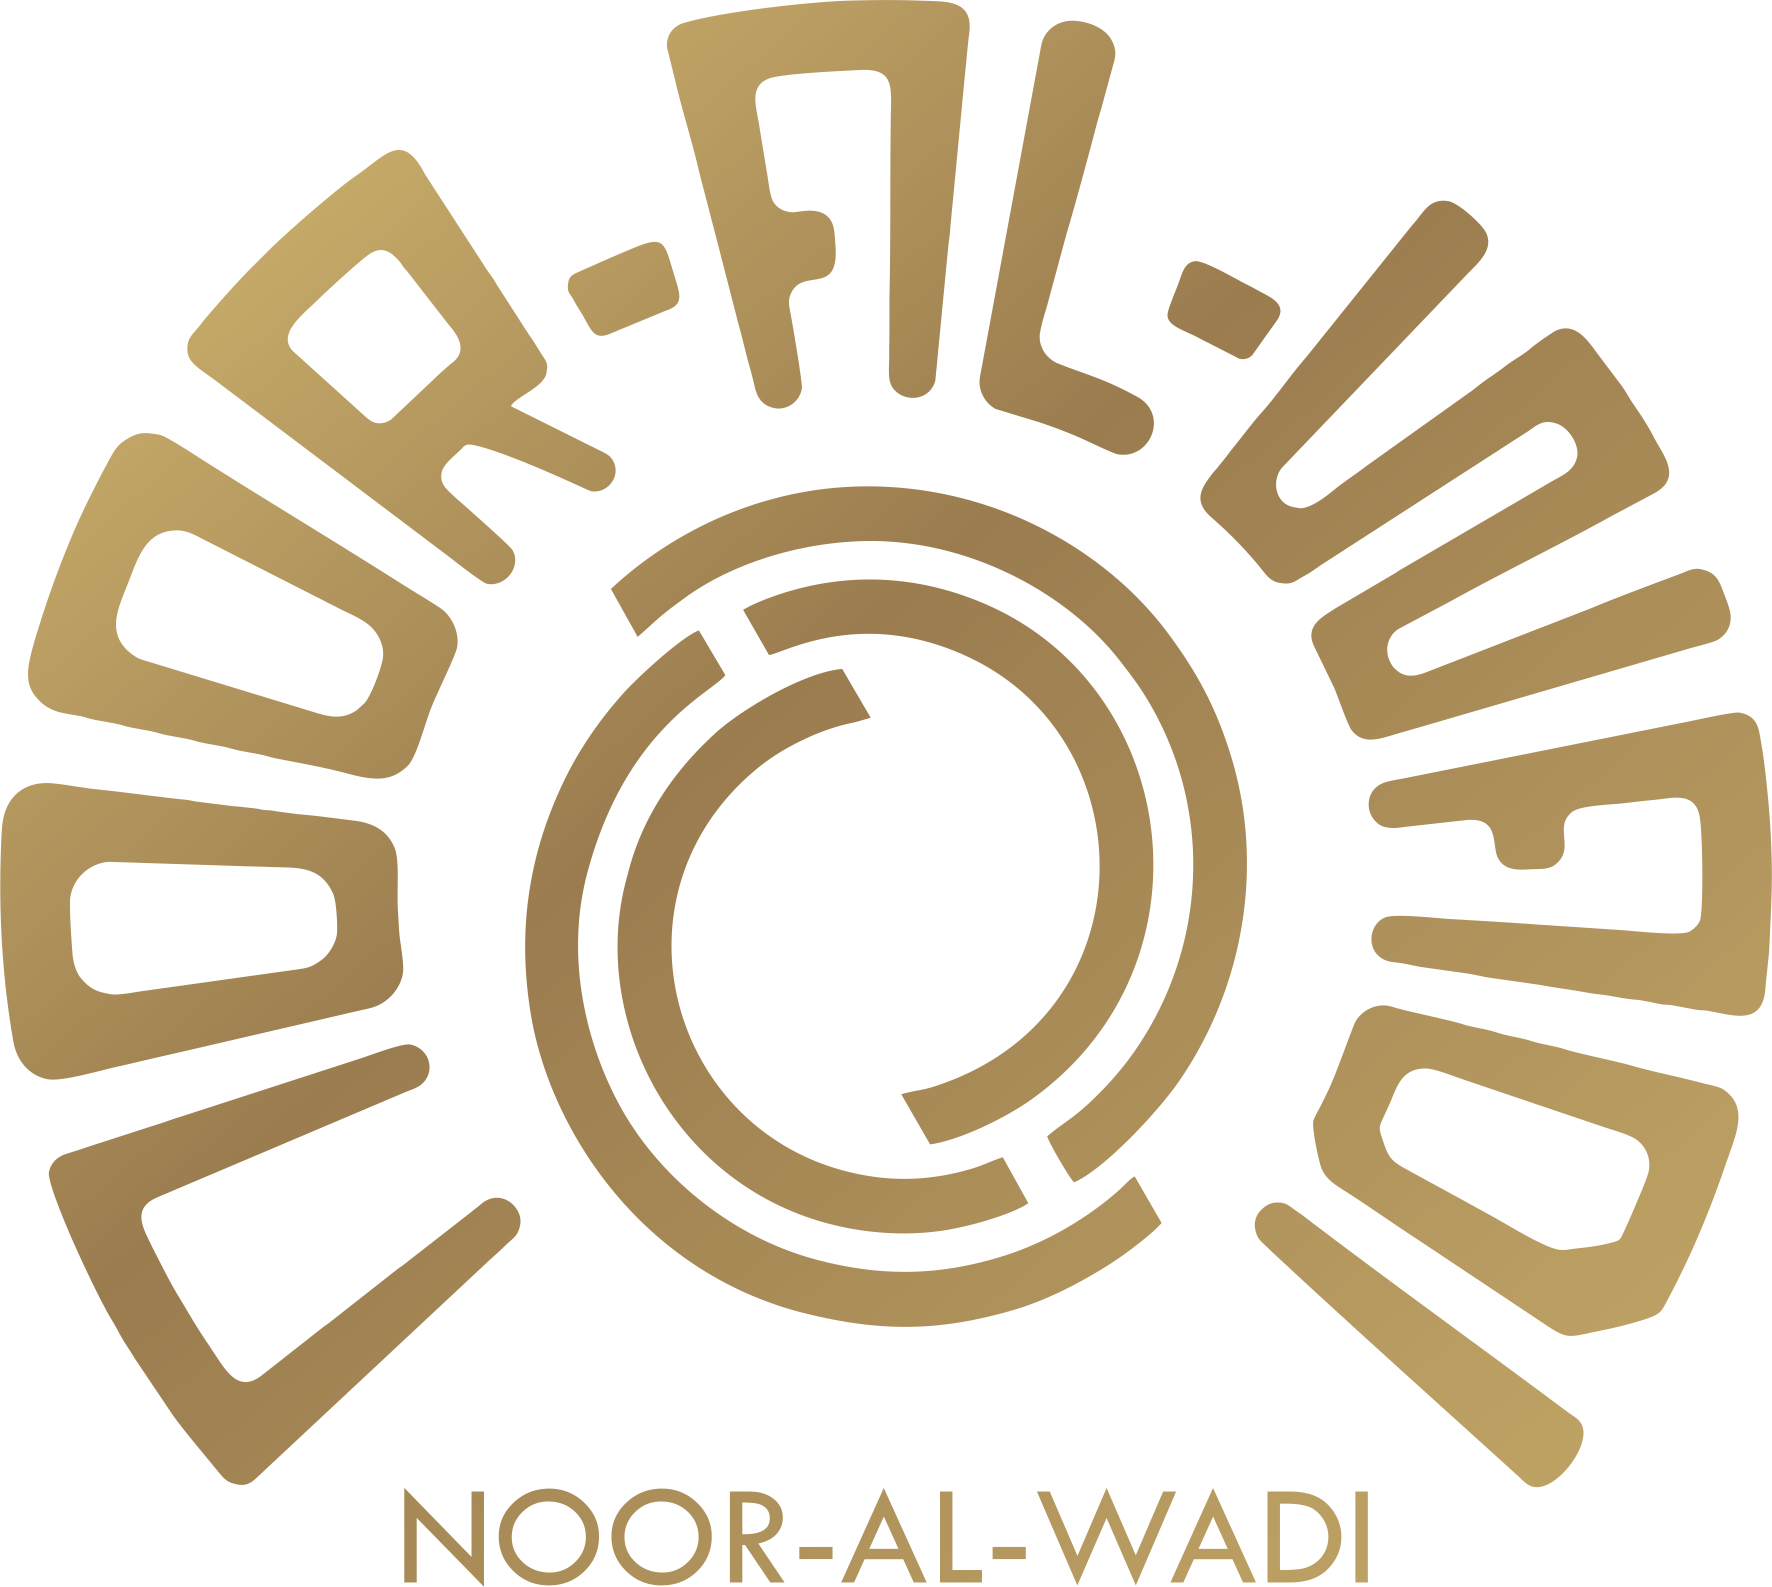 NOOR-AL-WADI